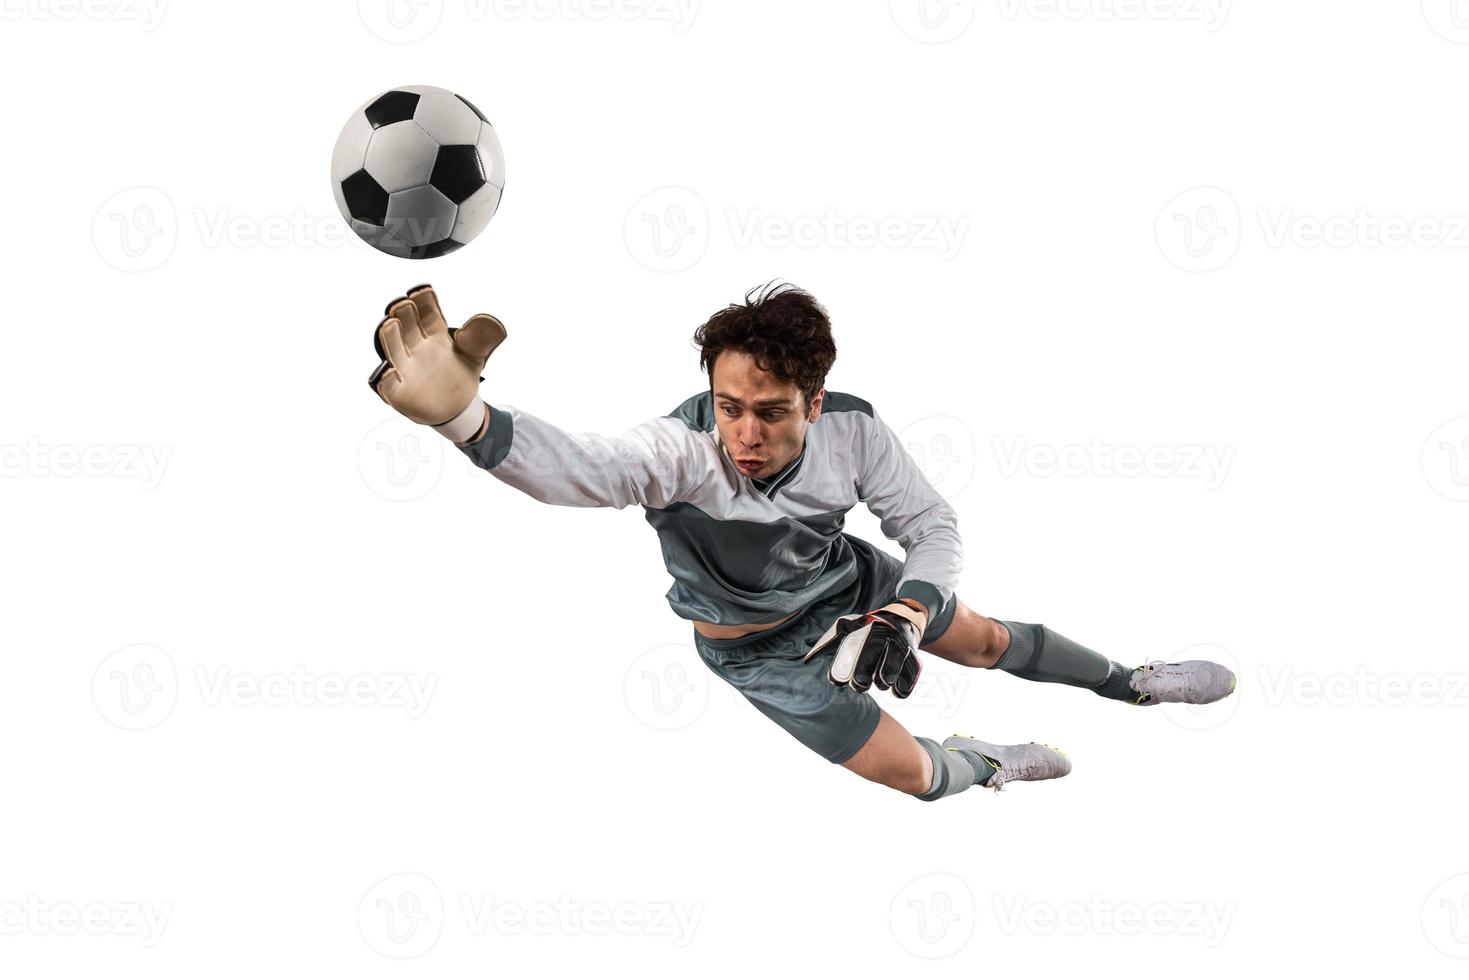 fotboll målvakt den där gör en bra spara och undviker en mål foto